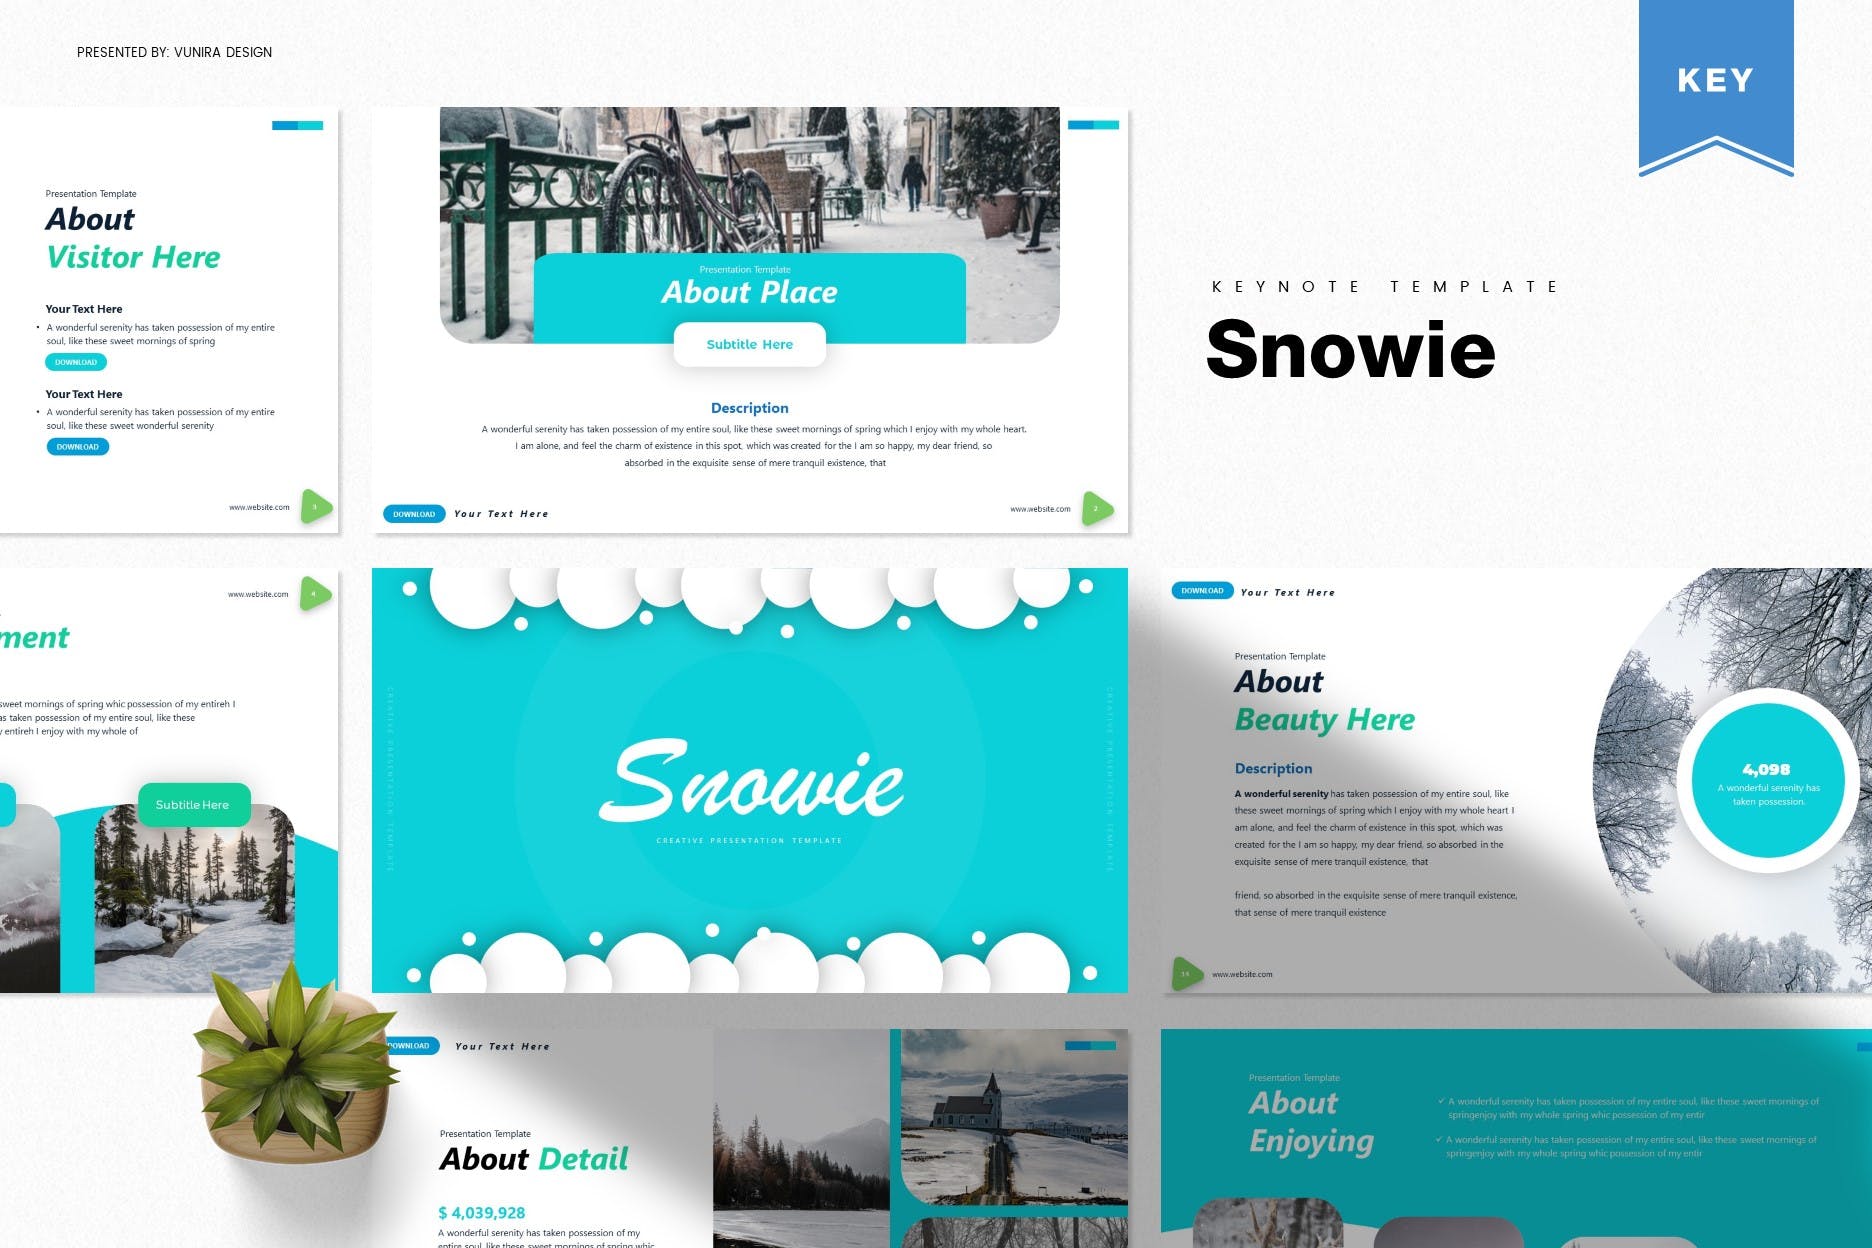 冬季元素版式第一素材精选Keynote模板 Snowie | Keynote Template插图